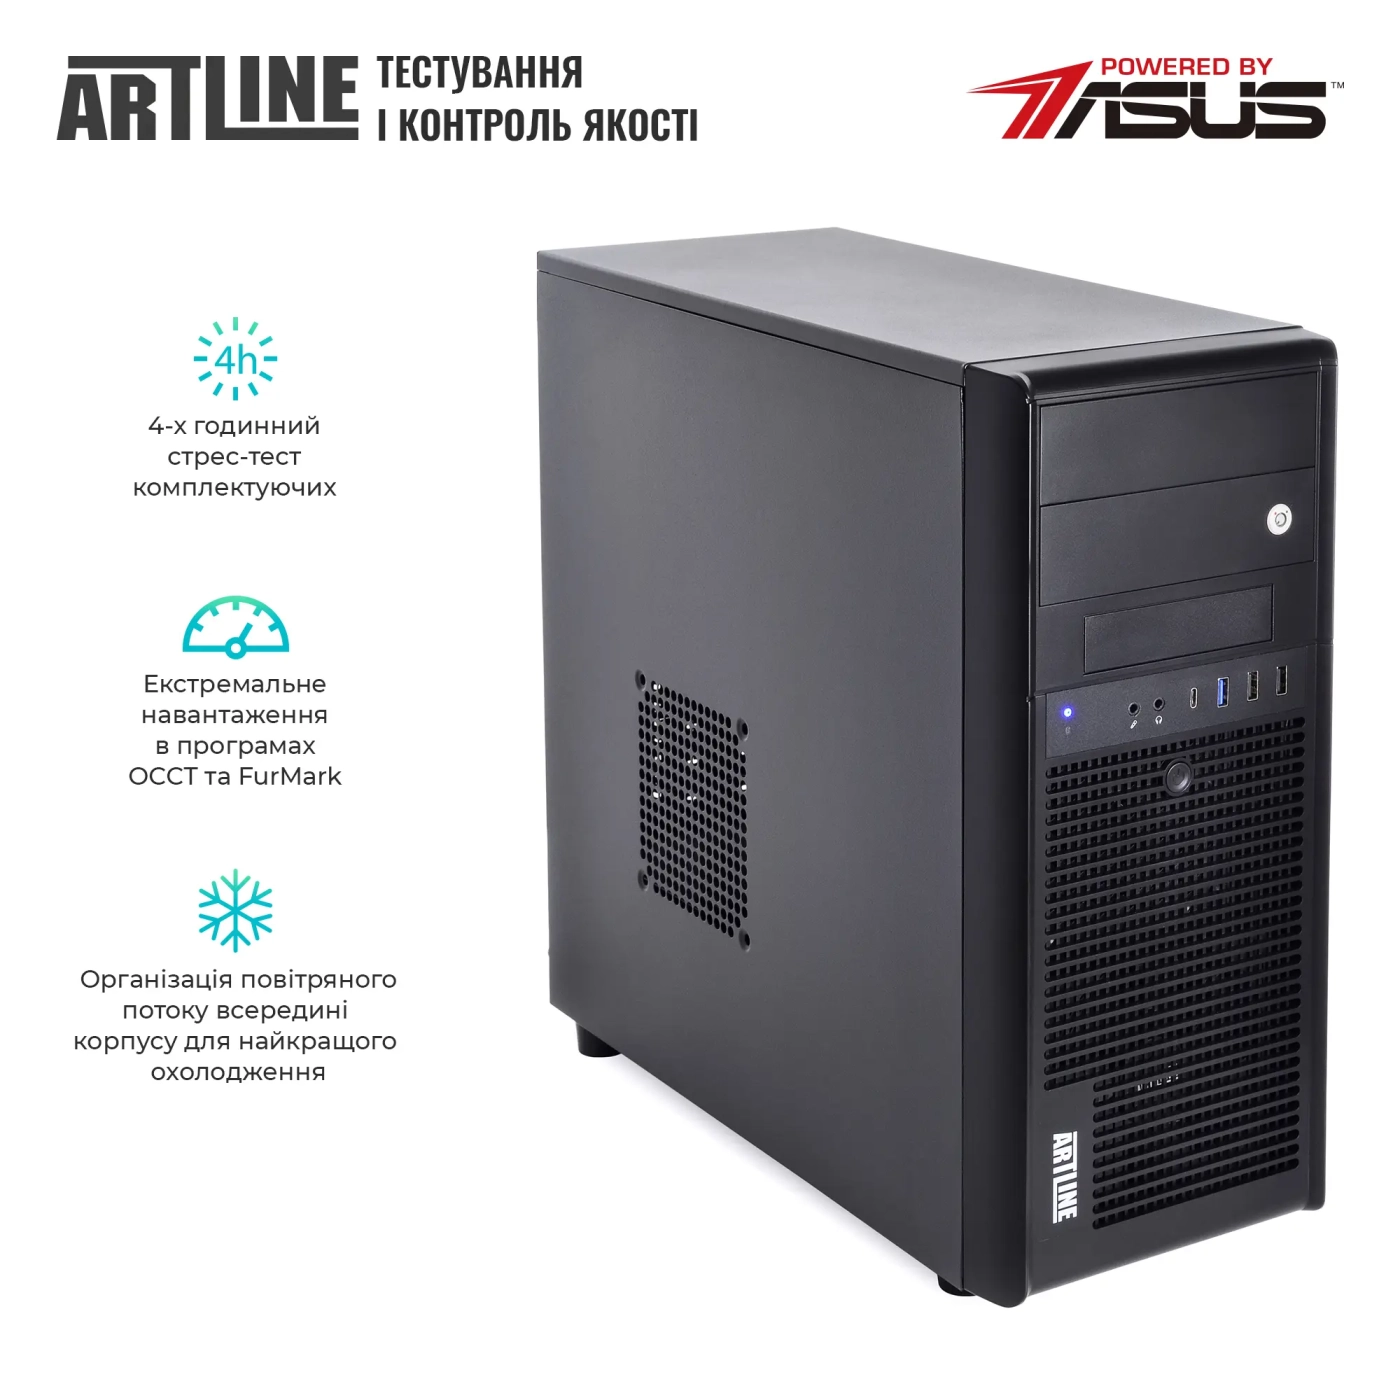 Купить Сервер ARTLINE Business T35 (T35v34) - фото 7